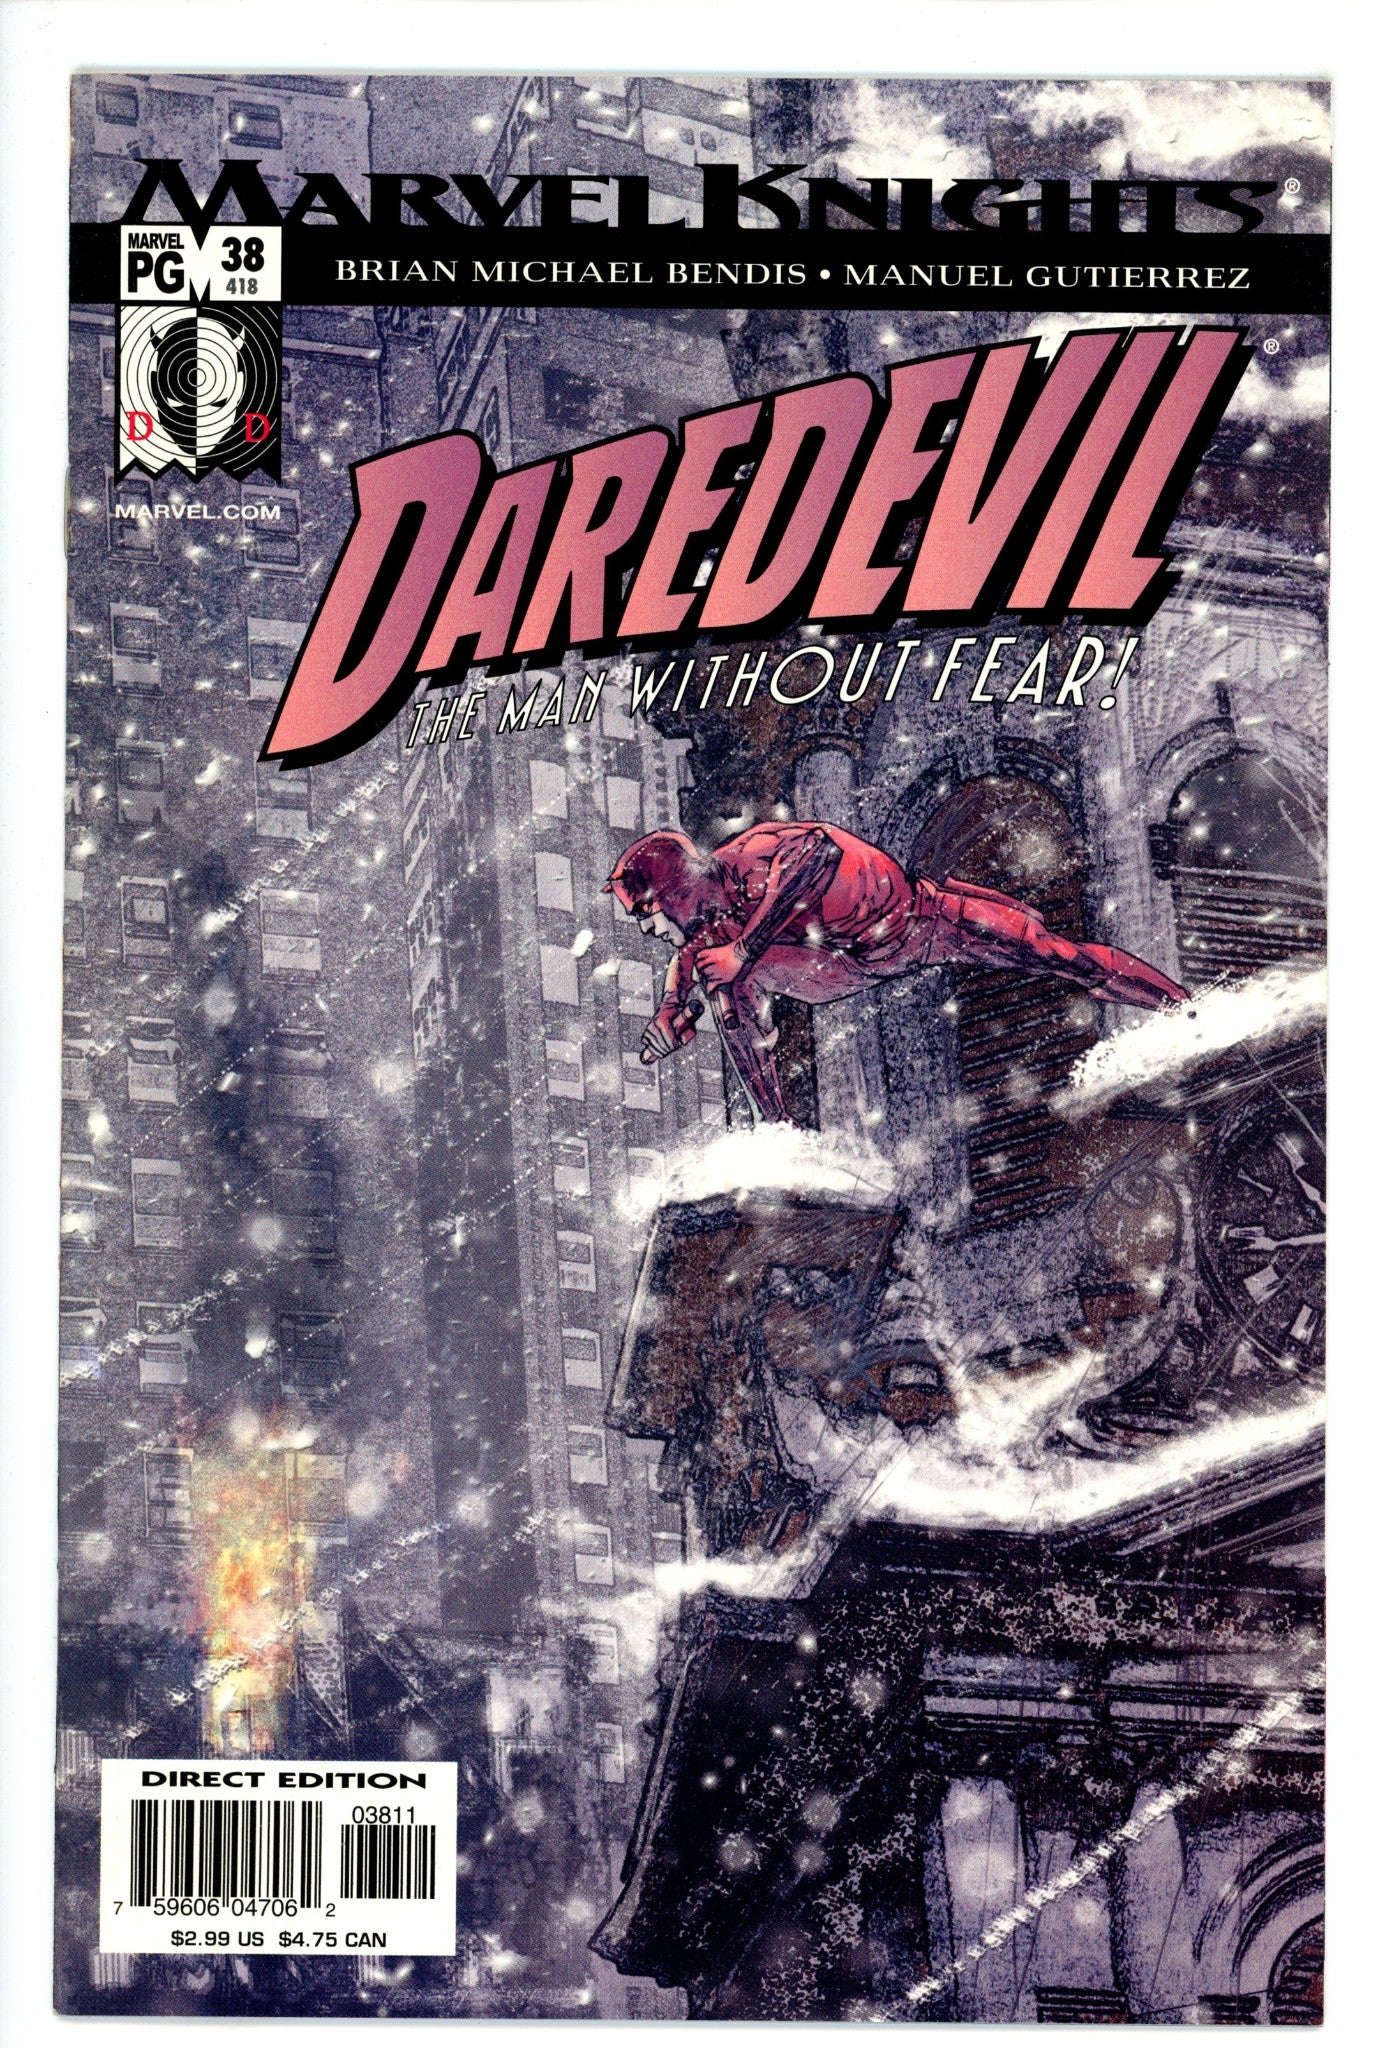 Daredevil Vol 2 38